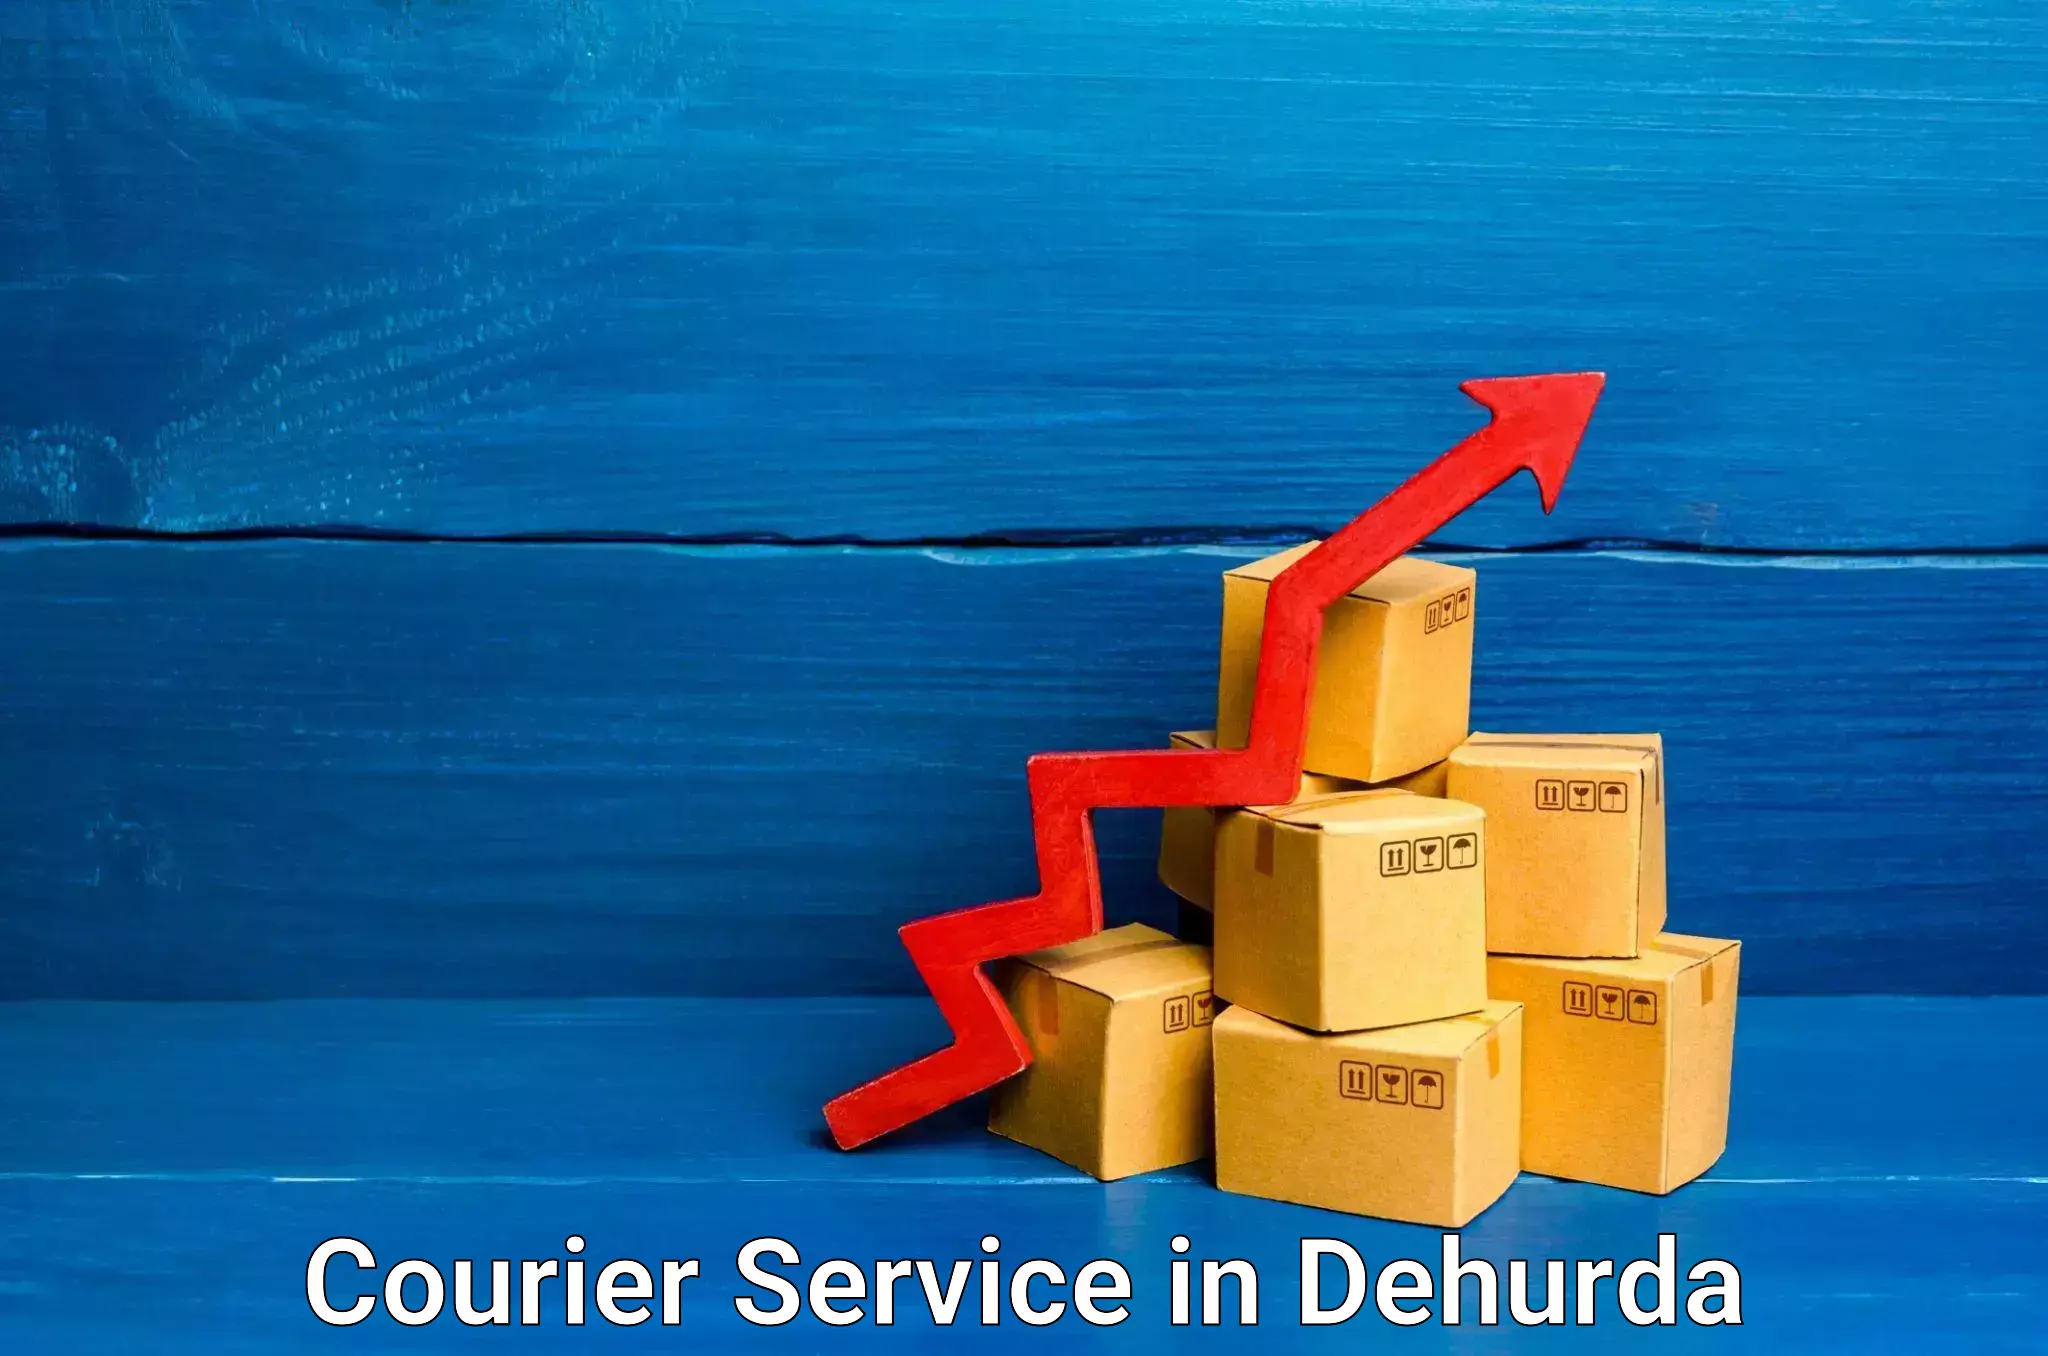 International courier rates in Dehurda